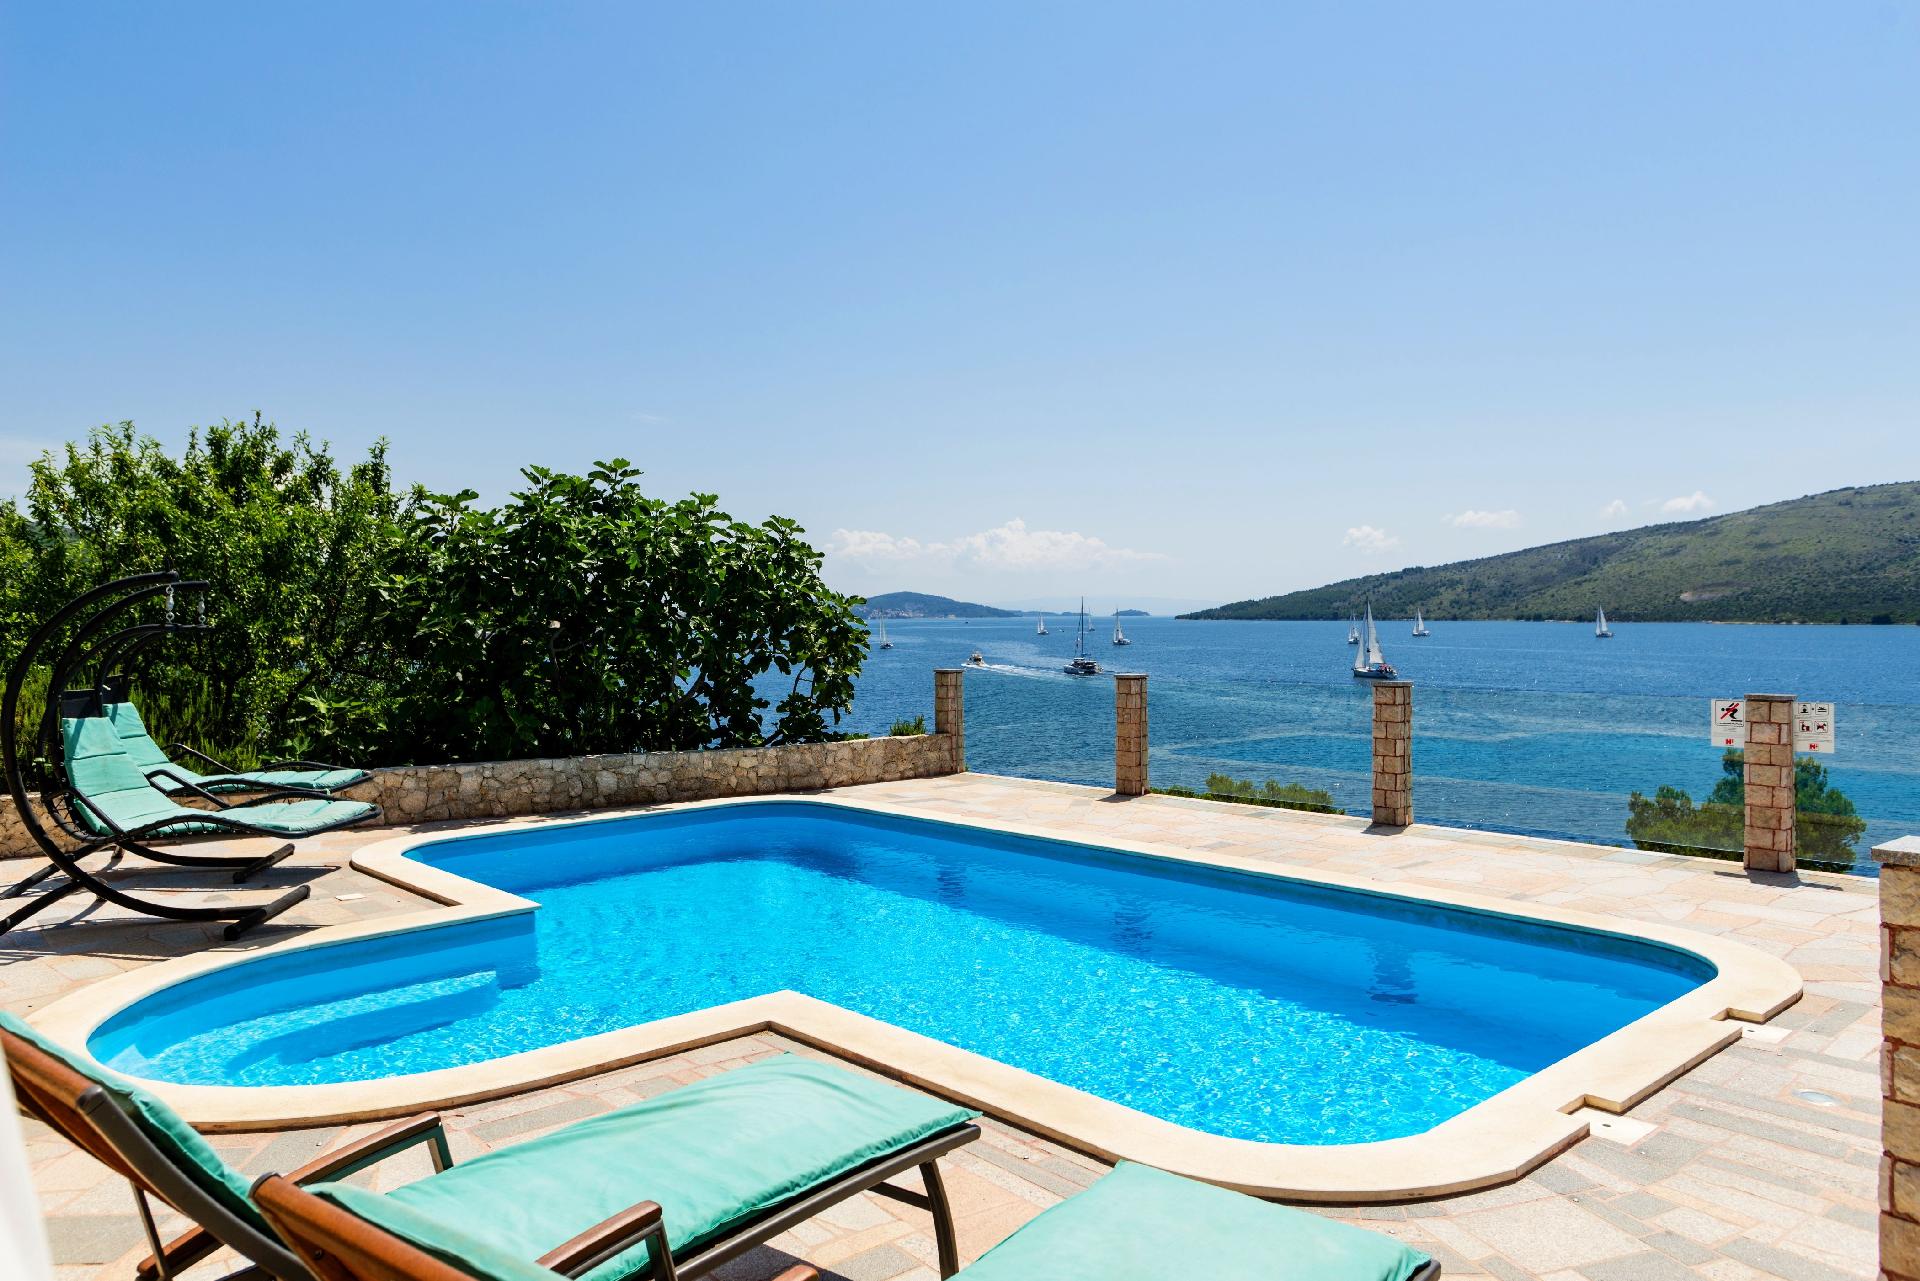 Seaside Villa Lara - Pinienwald, beheizter Swimmin  in Kroatien